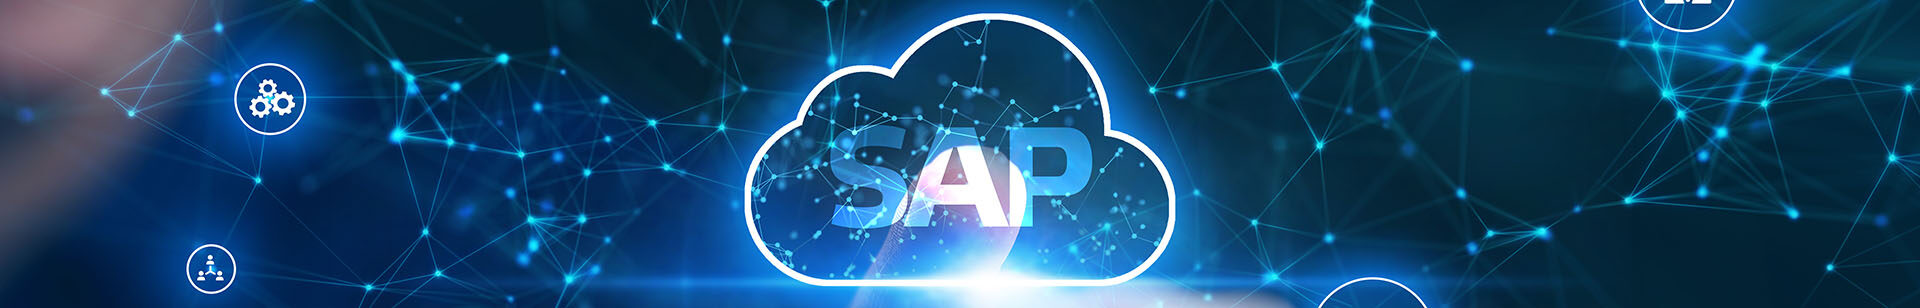 sap industry cloud